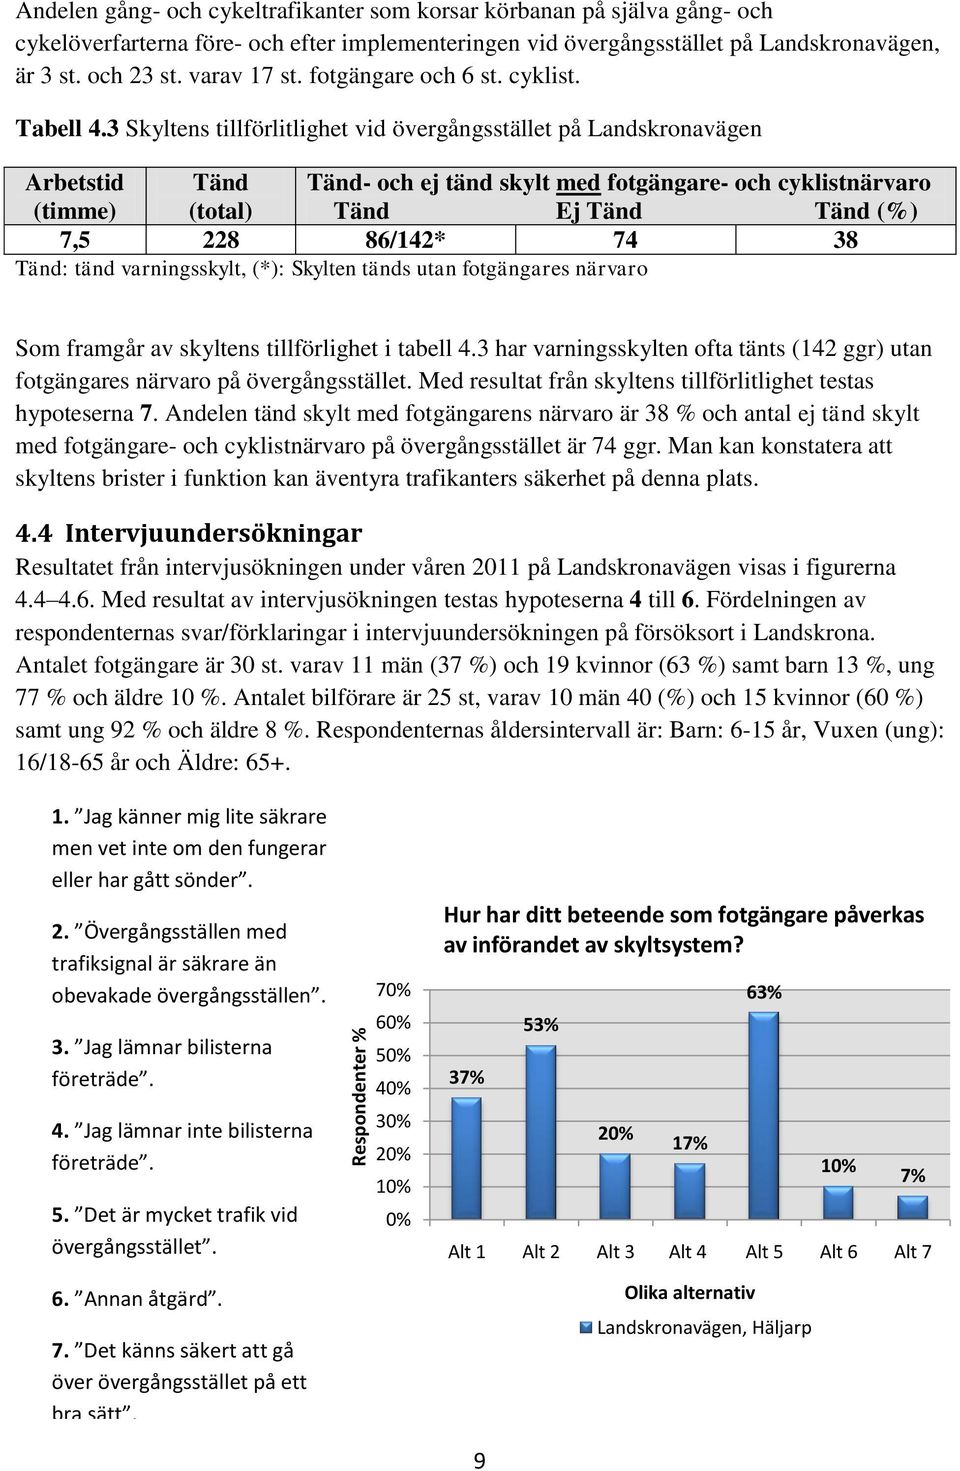 3 Skyltens tillförlitlighet vid övergångsstället på Landskronavägen Arbetstid Tänd Tänd- och ej tänd skylt med fotgängare- och cyklistnärvaro (timme) (total) Tänd Ej Tänd Tänd (%) 7,5 228 86/142* 74